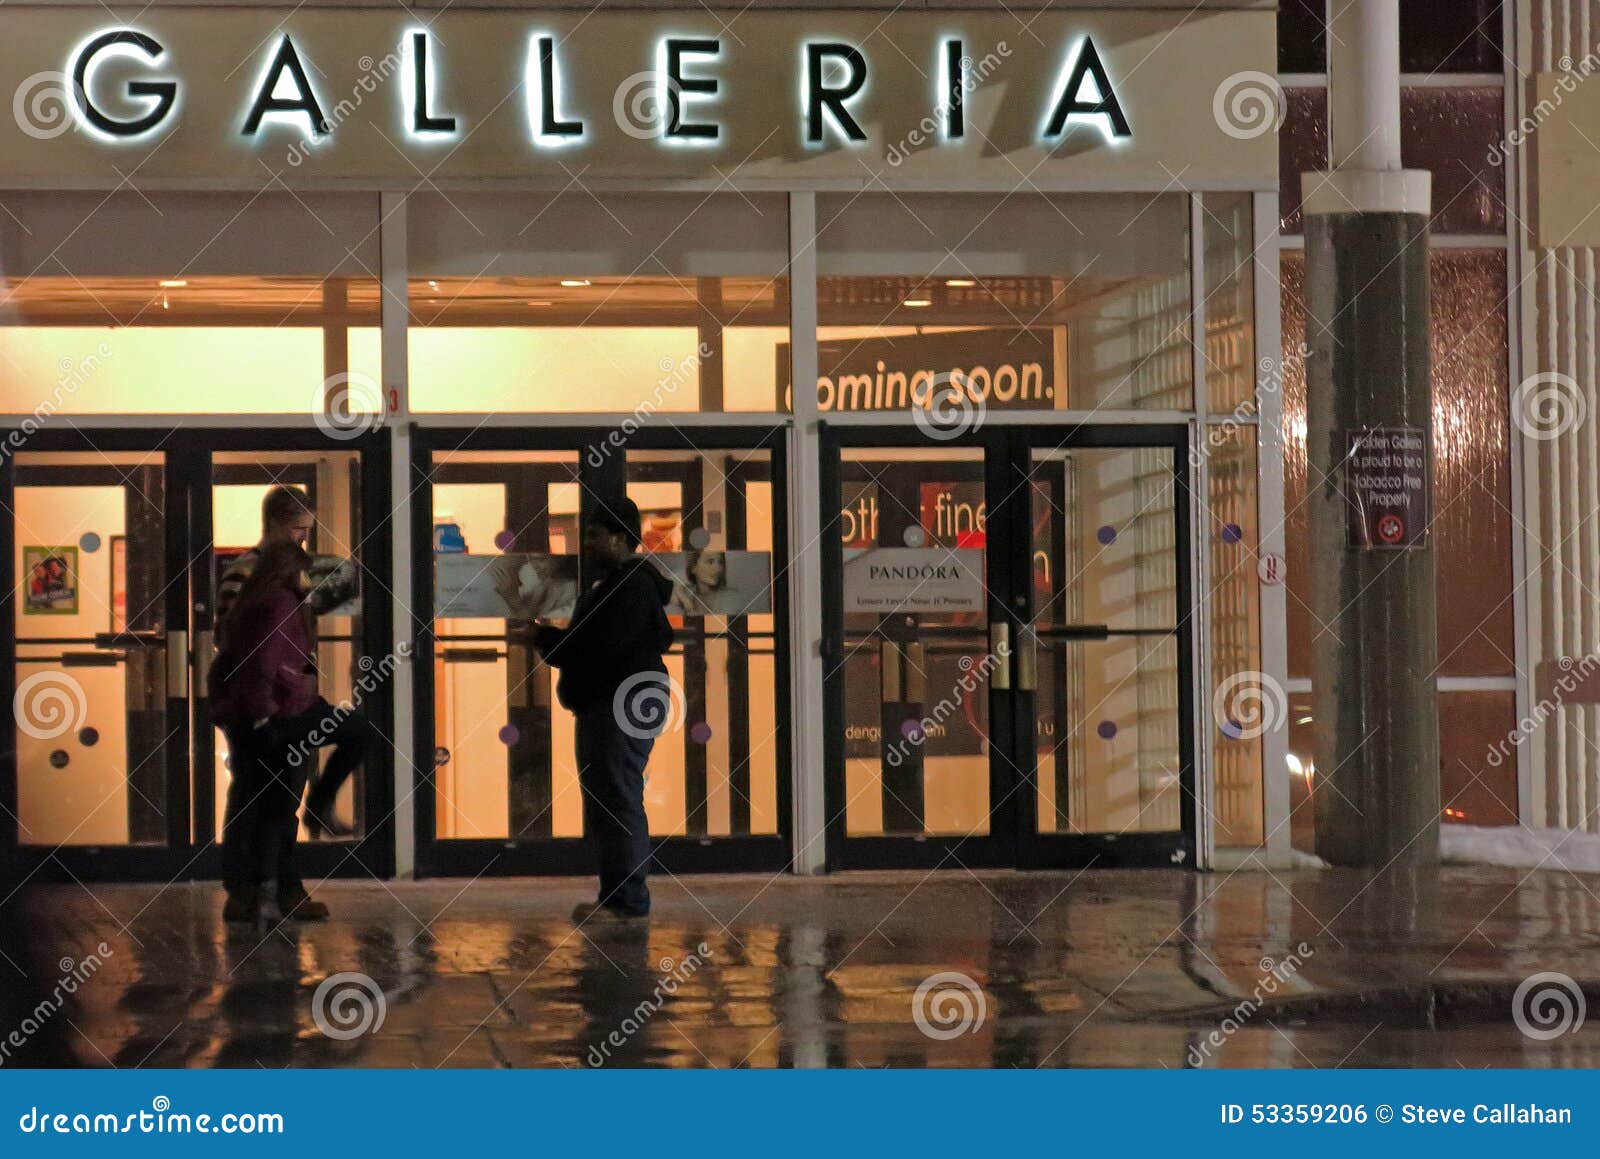 Walden Galleria Mall